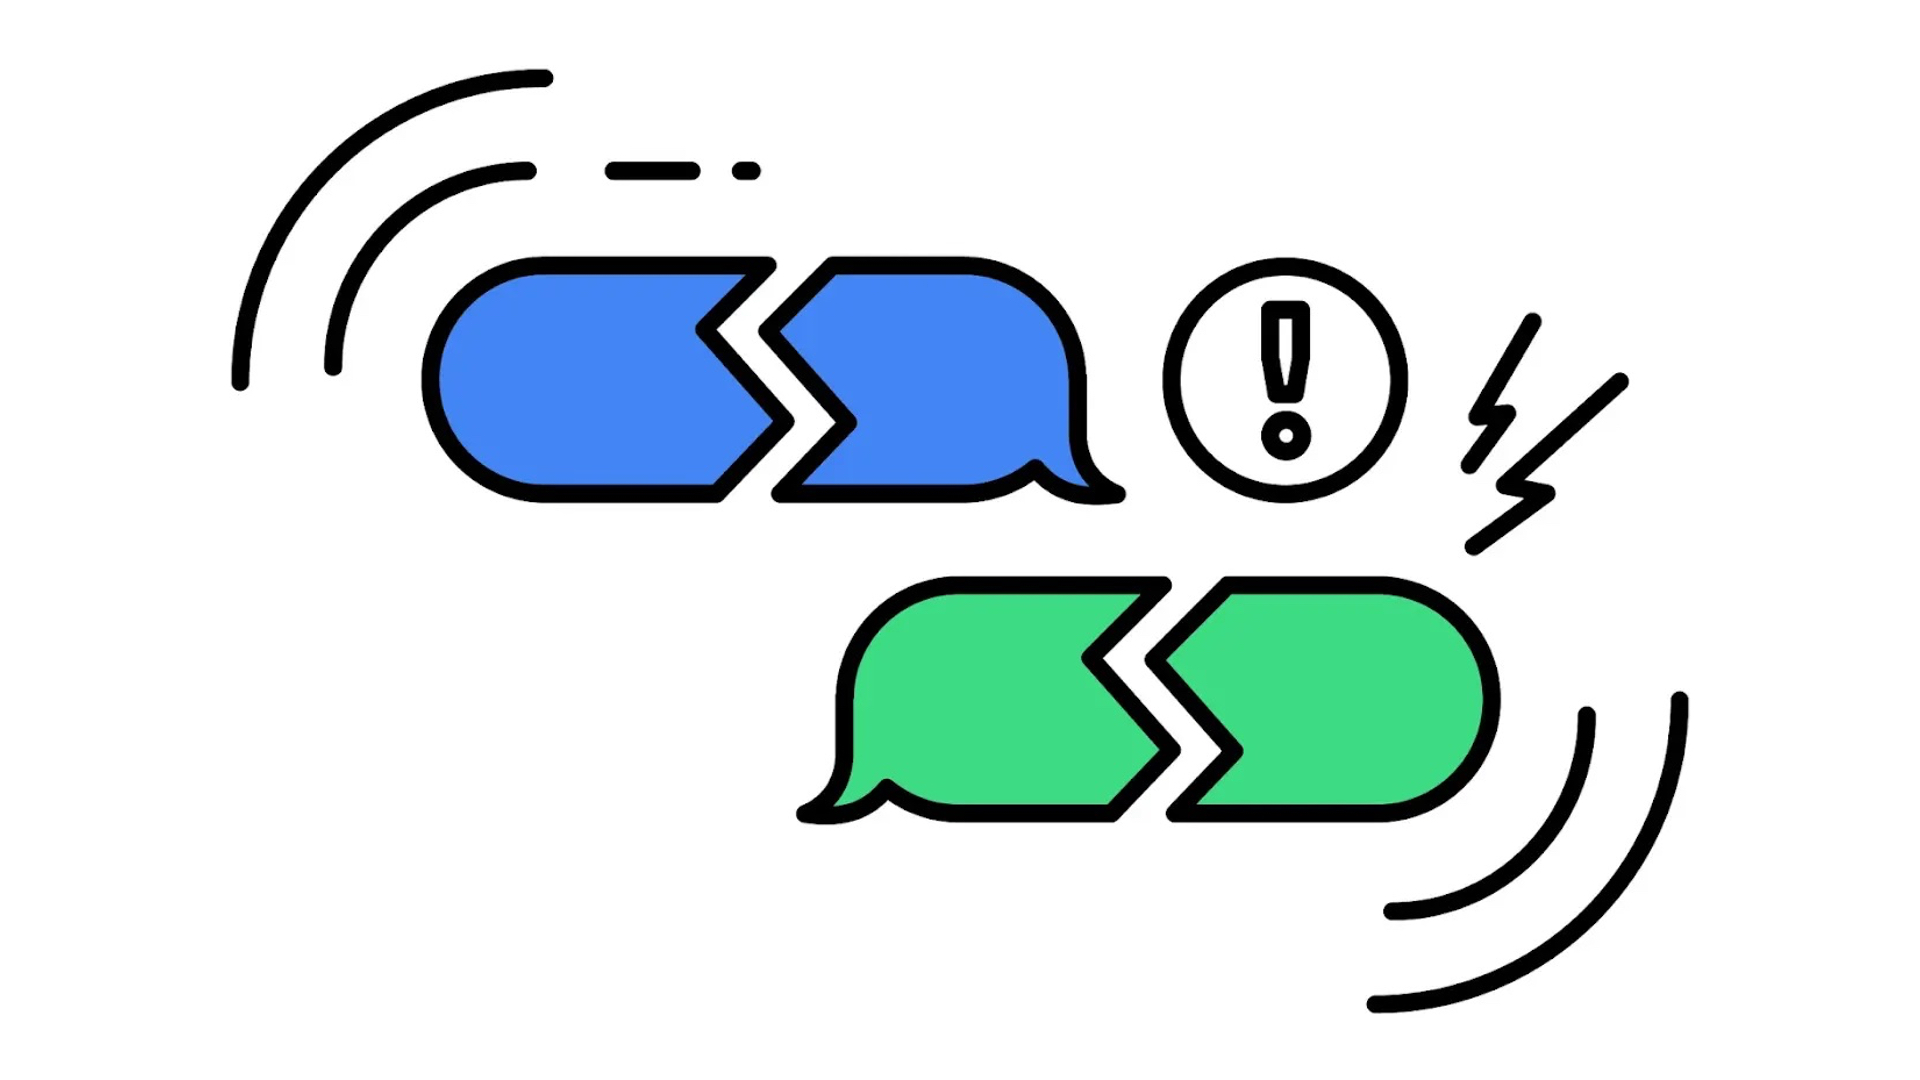 一幅文字信息气泡的图画，一个绿色，一个蓝色，两个都在中间断开